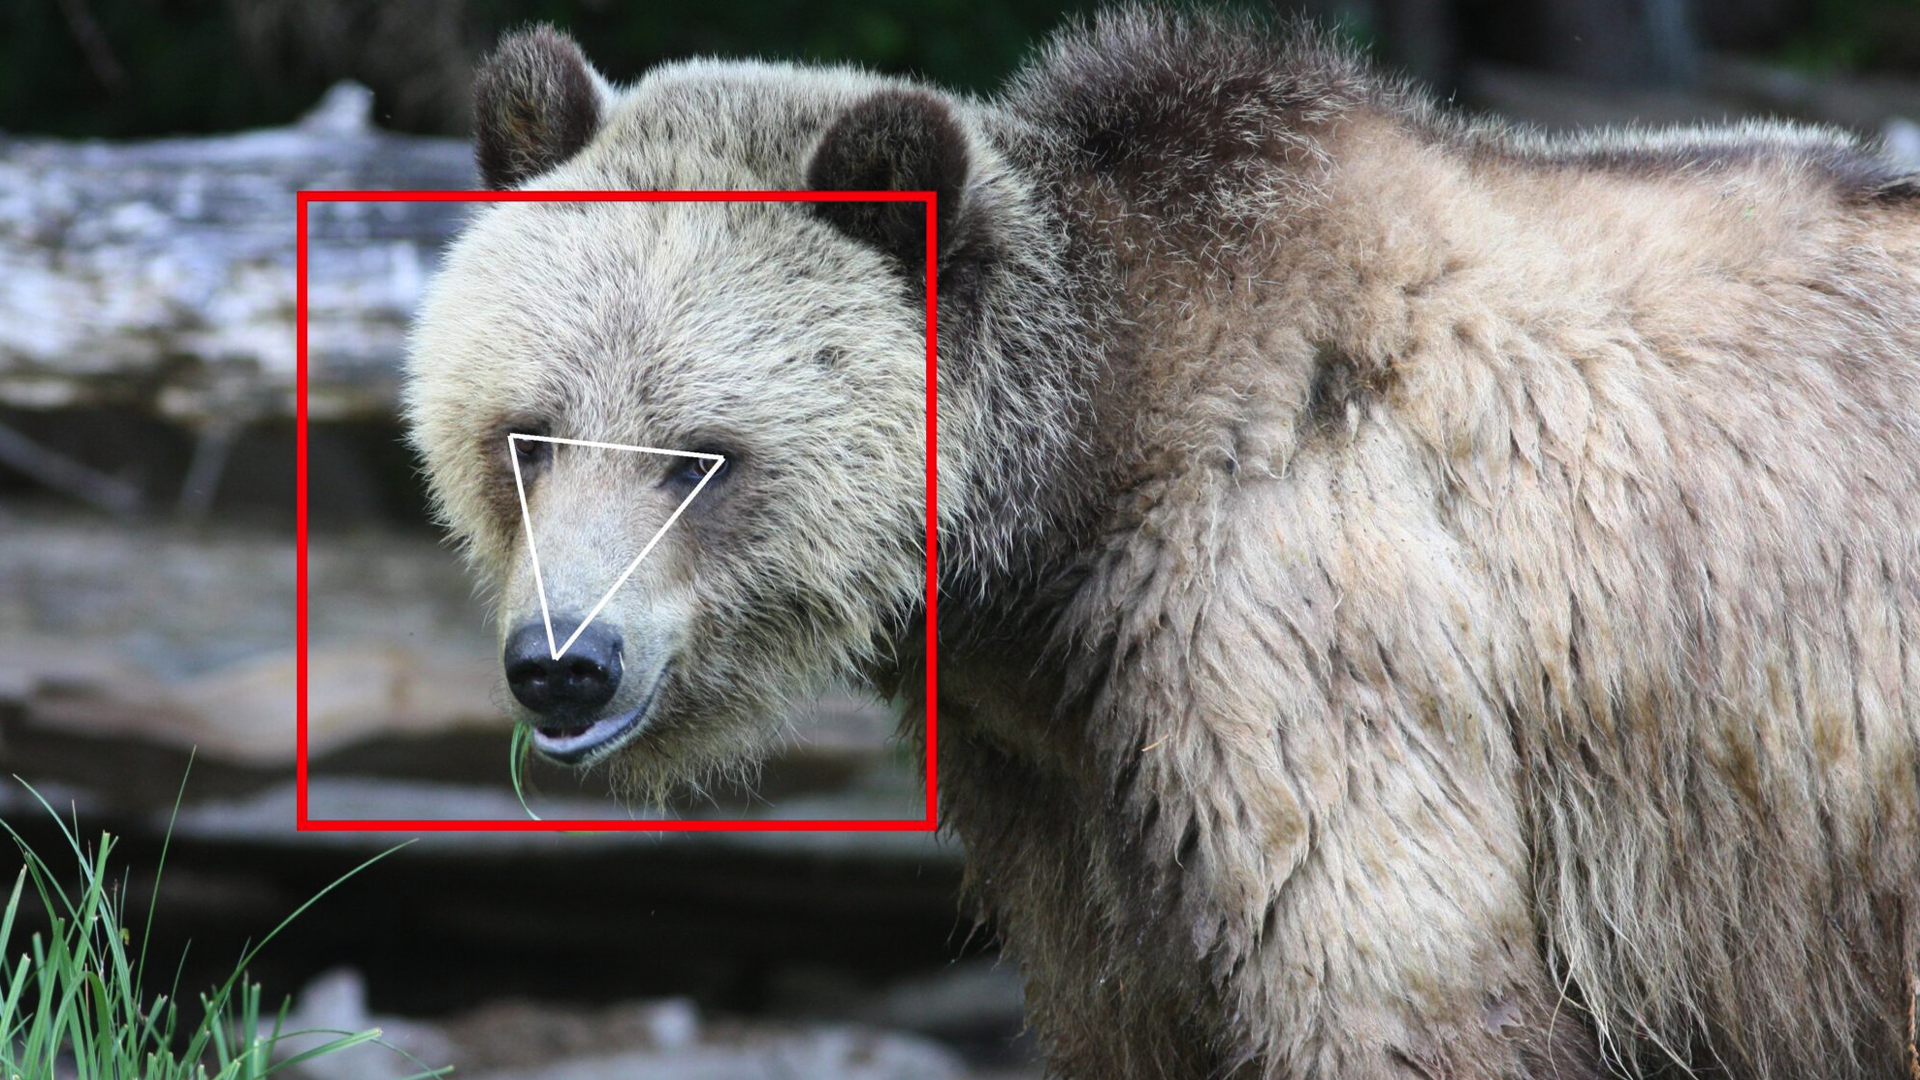 il-riconoscimento-facciale-per-gli-orsi-non-e-cosi-strano-come-si-potrebbe-pensare